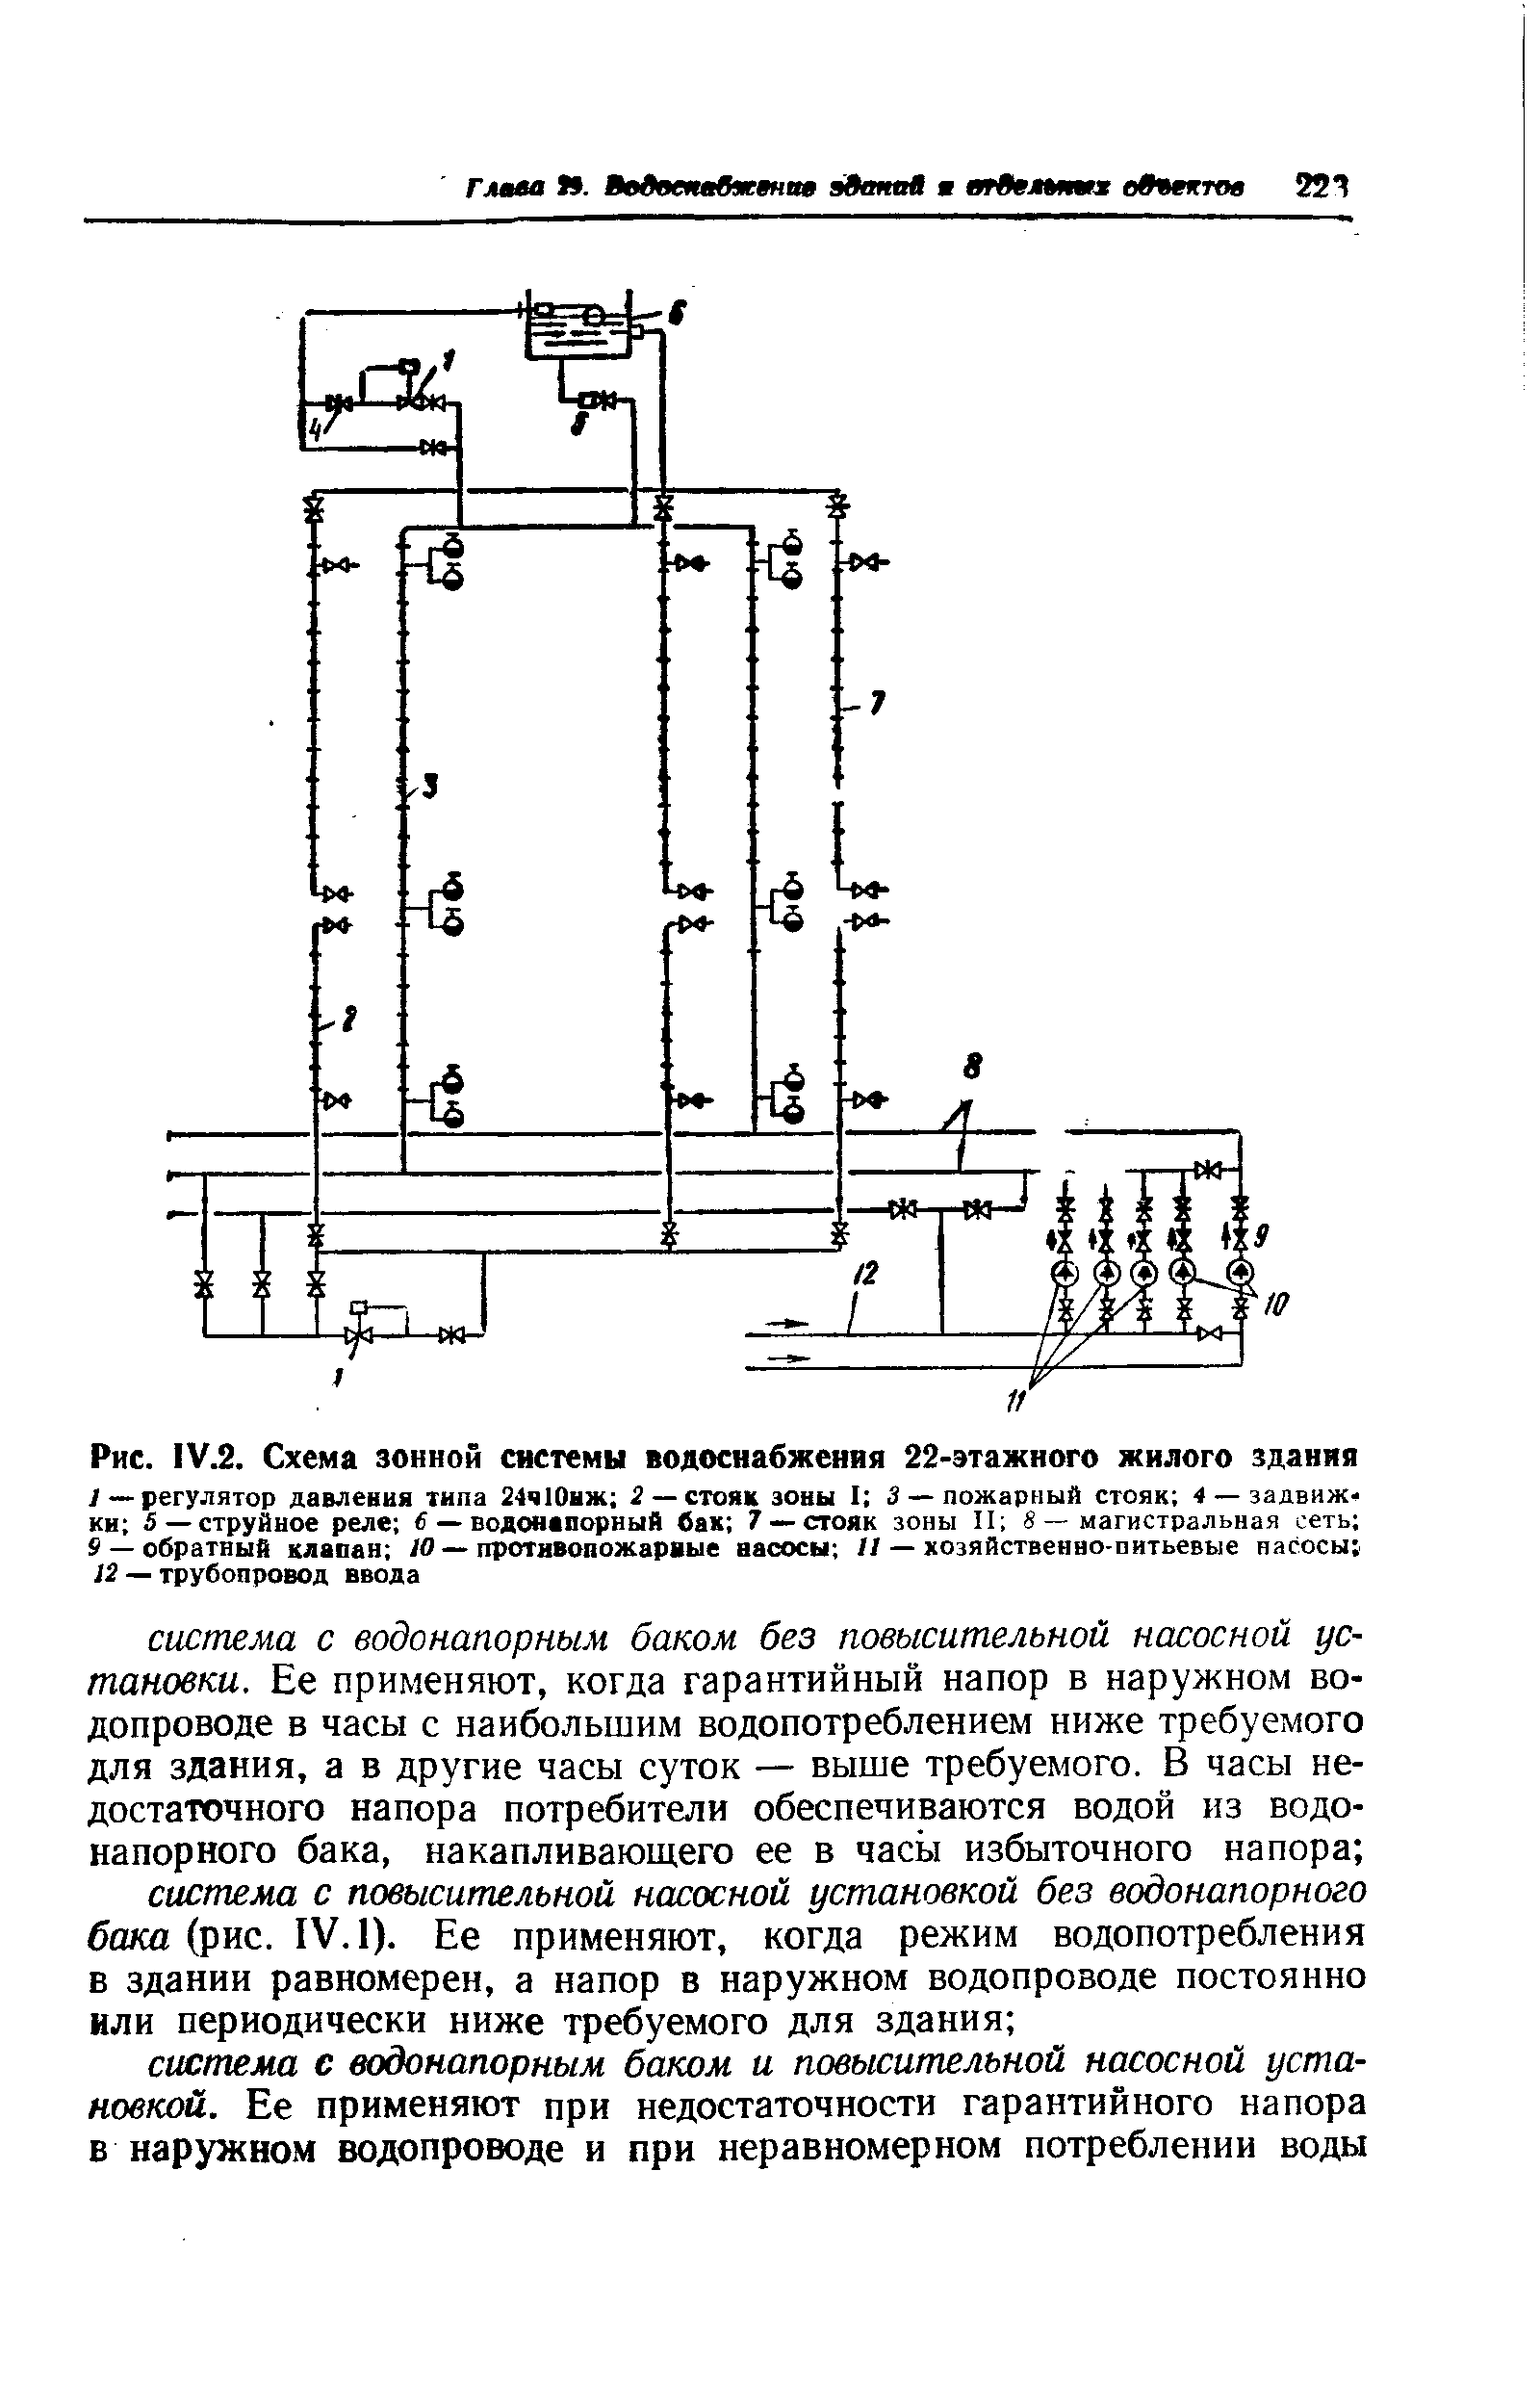 Рис. 1У.2. Схема зонной системы водоснабжения 22-этажного жилого здания
